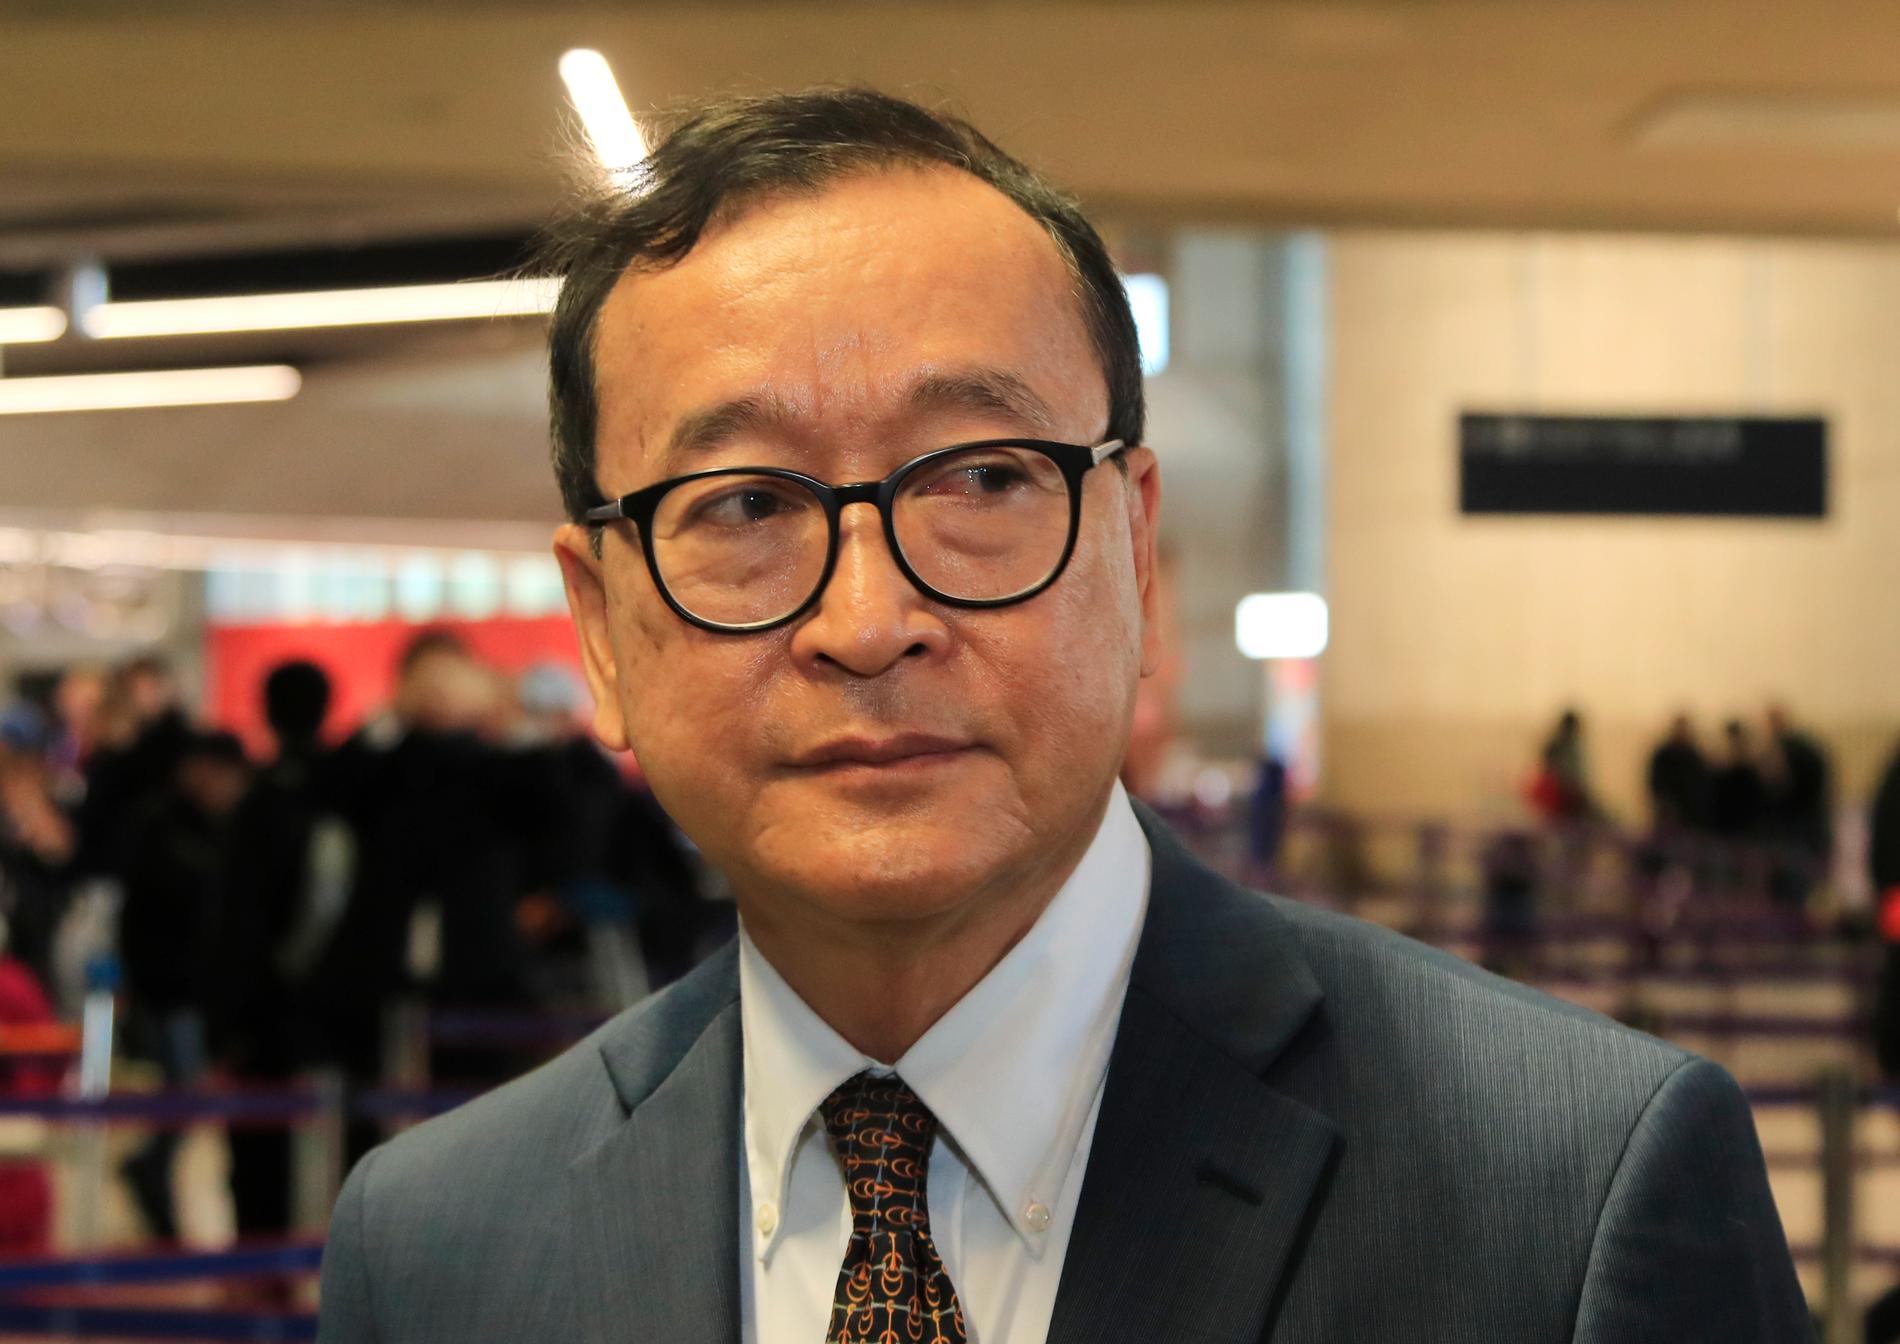 Den kambodjanske oppositionsledaren Sam Rainsy på flygplatsen Charles de Gaulle norr om Paris i torsdags.